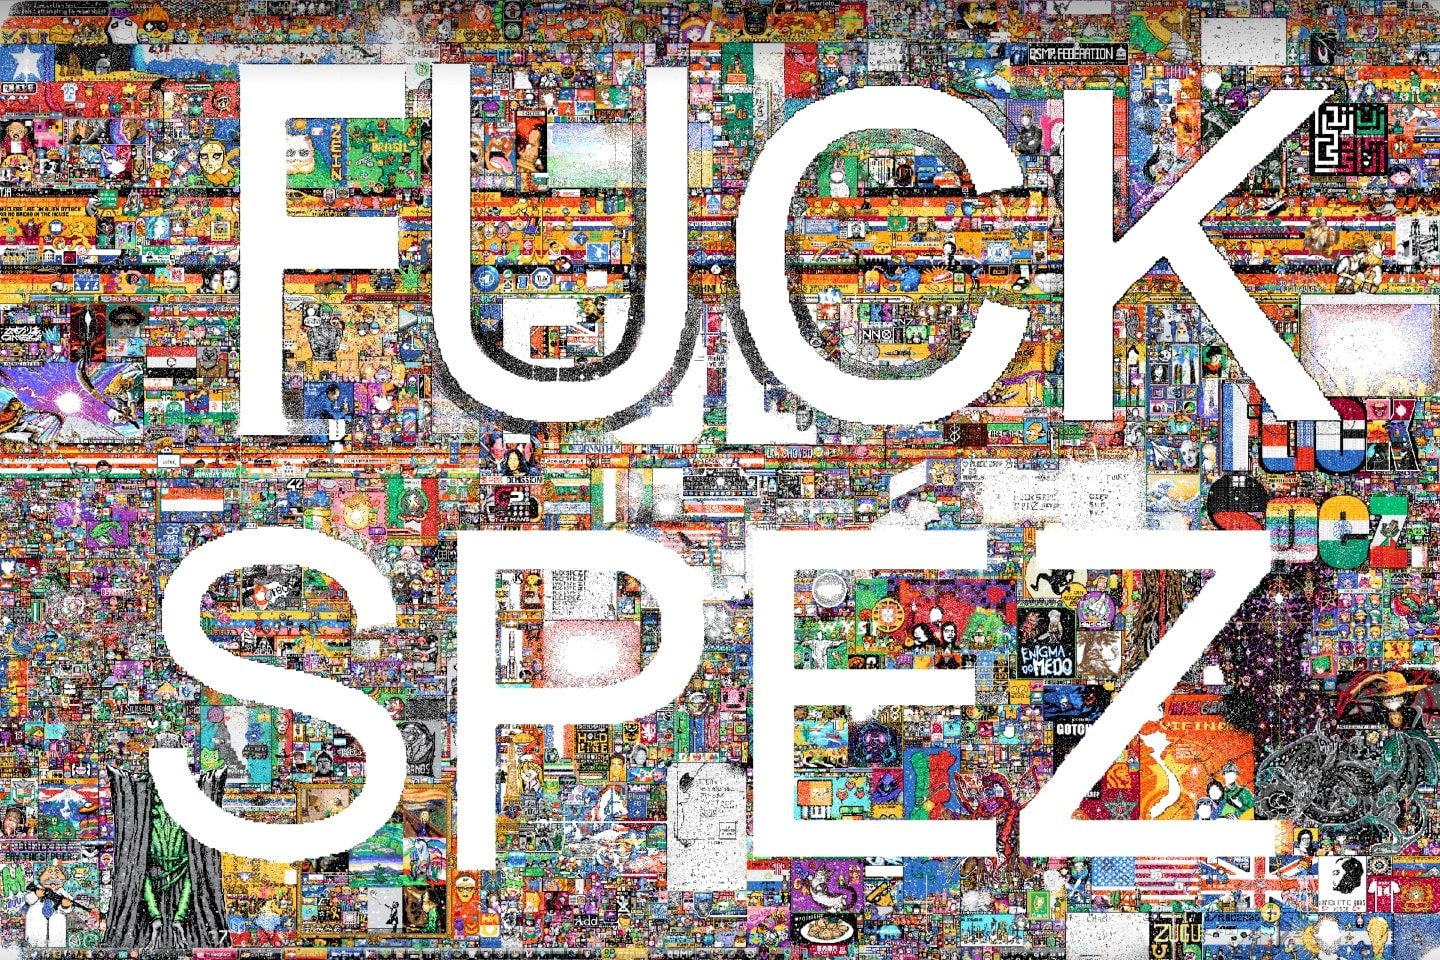 Visão geral do quadro colaborativo do r/Place, com as palavras “Fuck Spez” escritas com pixels brancos.